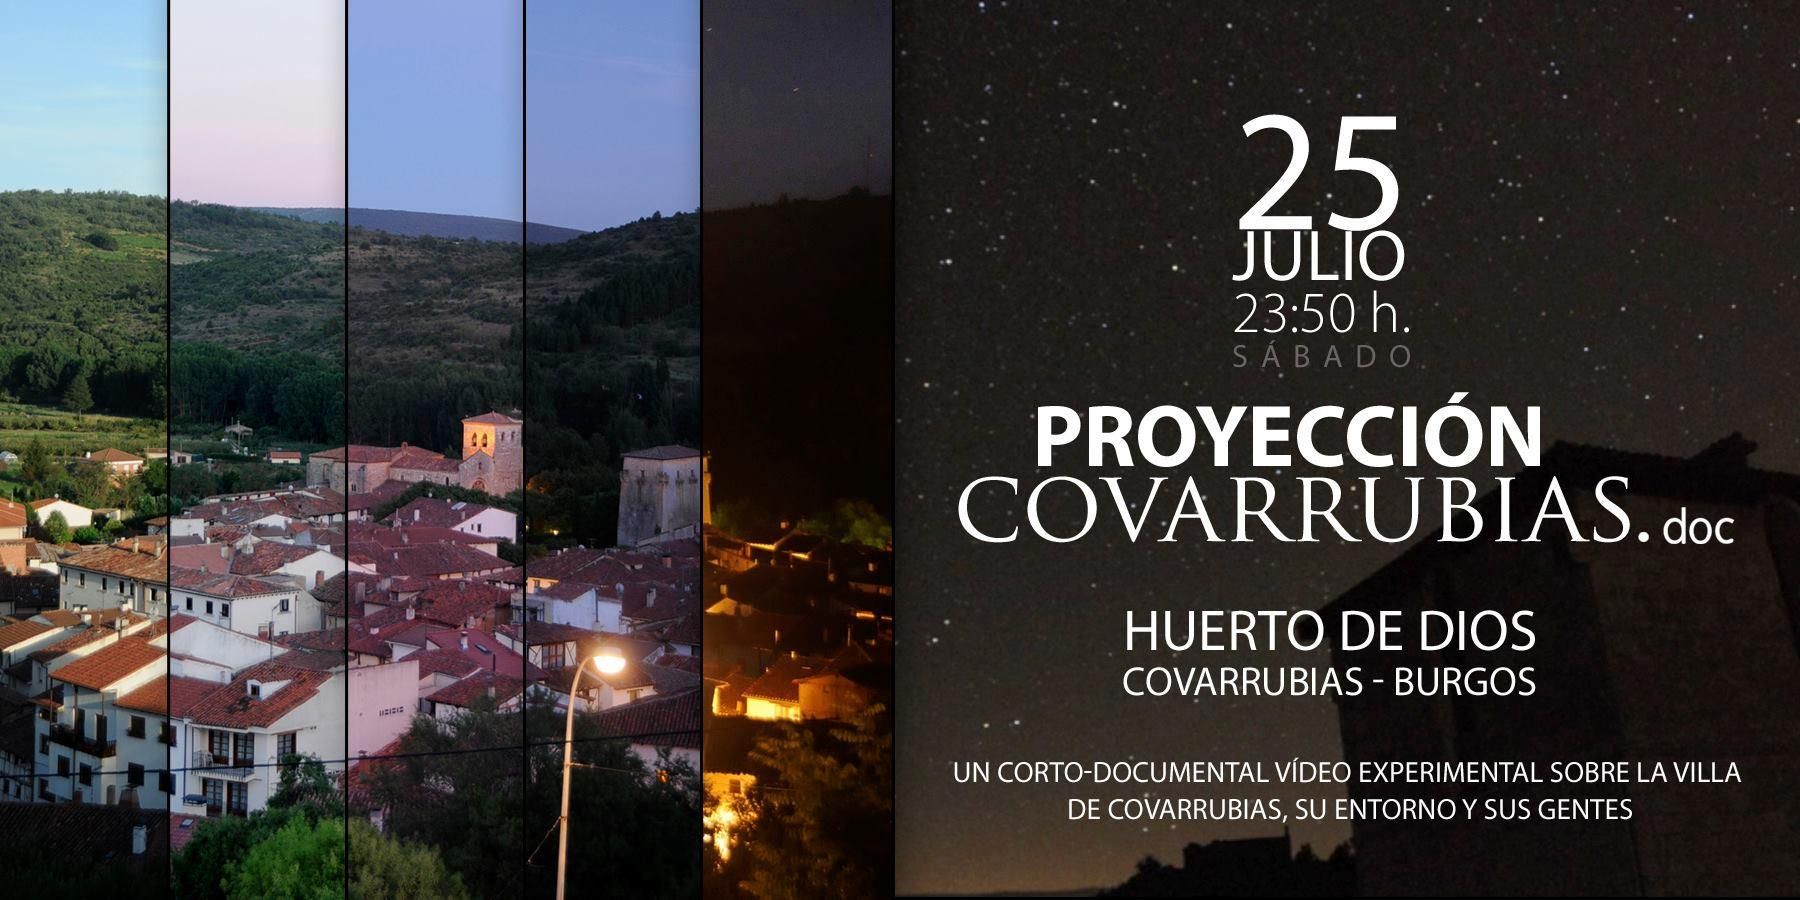 Proyección documental "Covarrubias.doc"